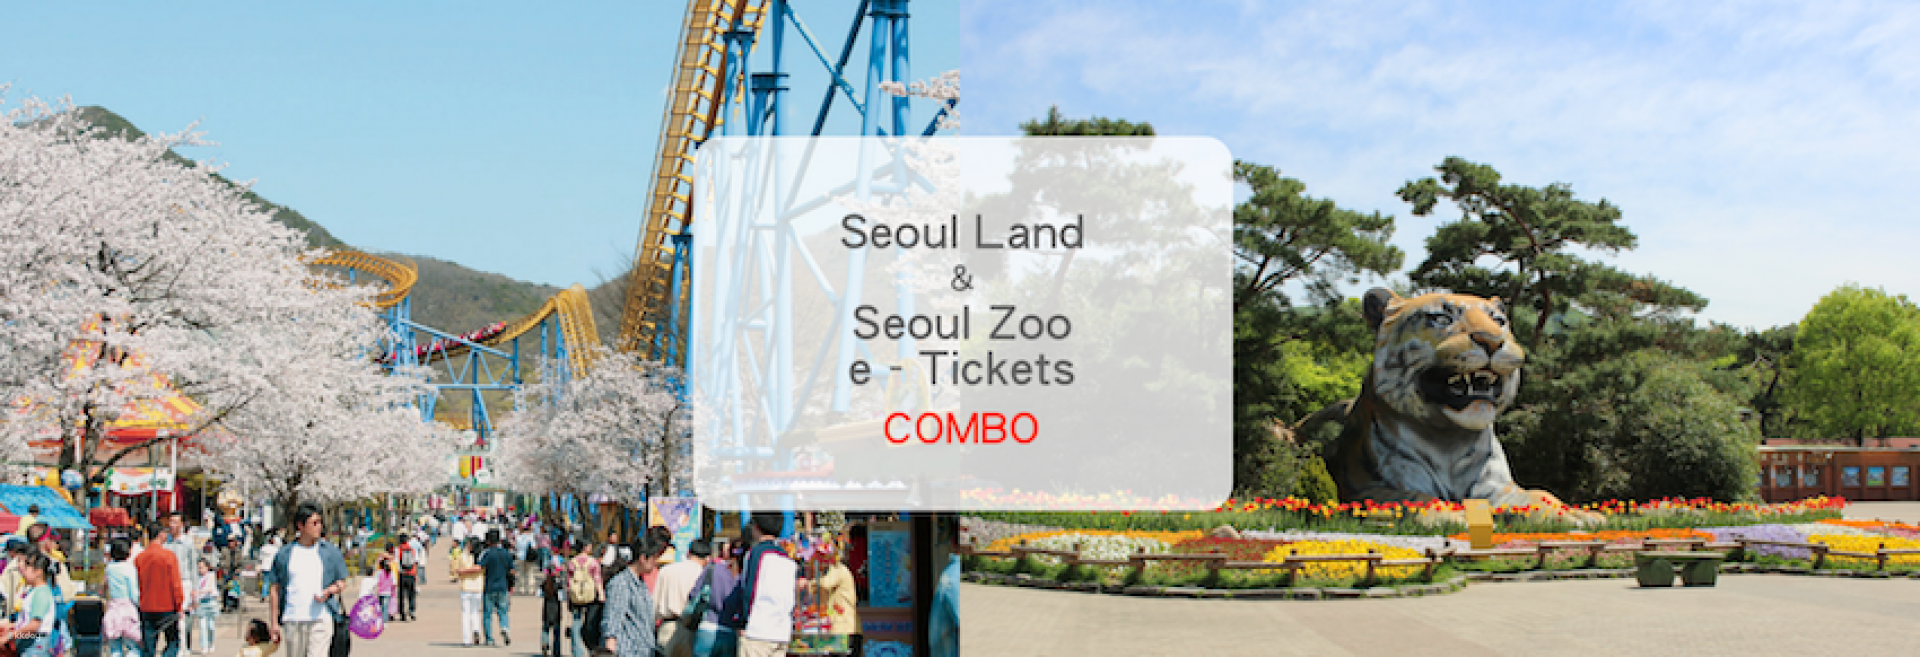 韓國-首爾樂園&首爾動物園&天空纜車套票